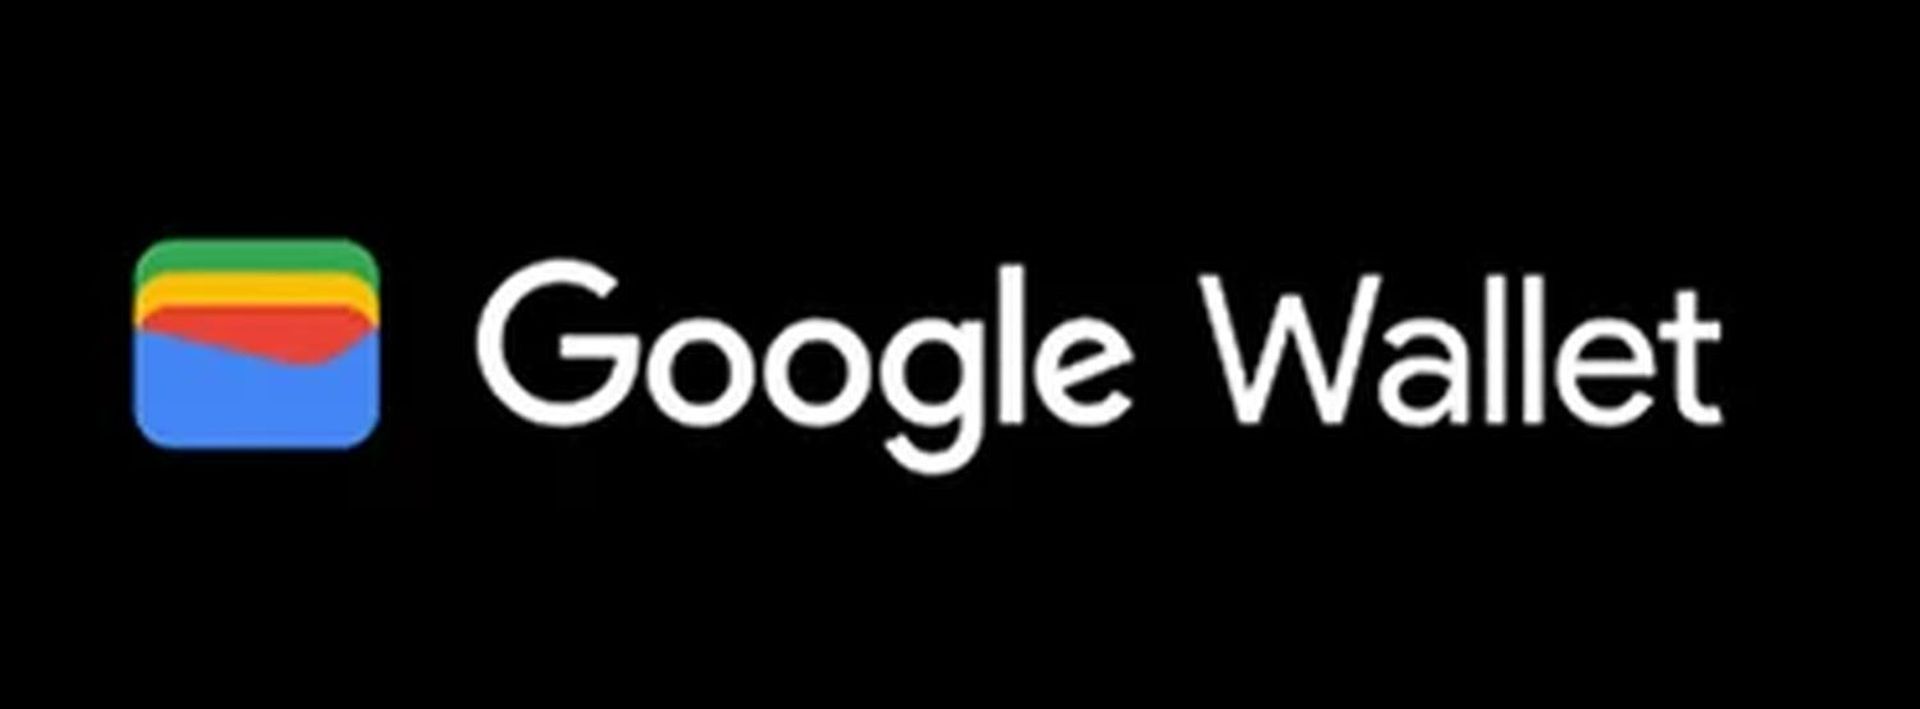 जानें कि Google वॉलेट हमारे व्यापक गाइड के साथ काम क्यों नहीं कर रहा है! इसके अलावा, आज़माने लायक Google वॉलेट विकल्प भी हैं। अभी अन्वेषण करें!